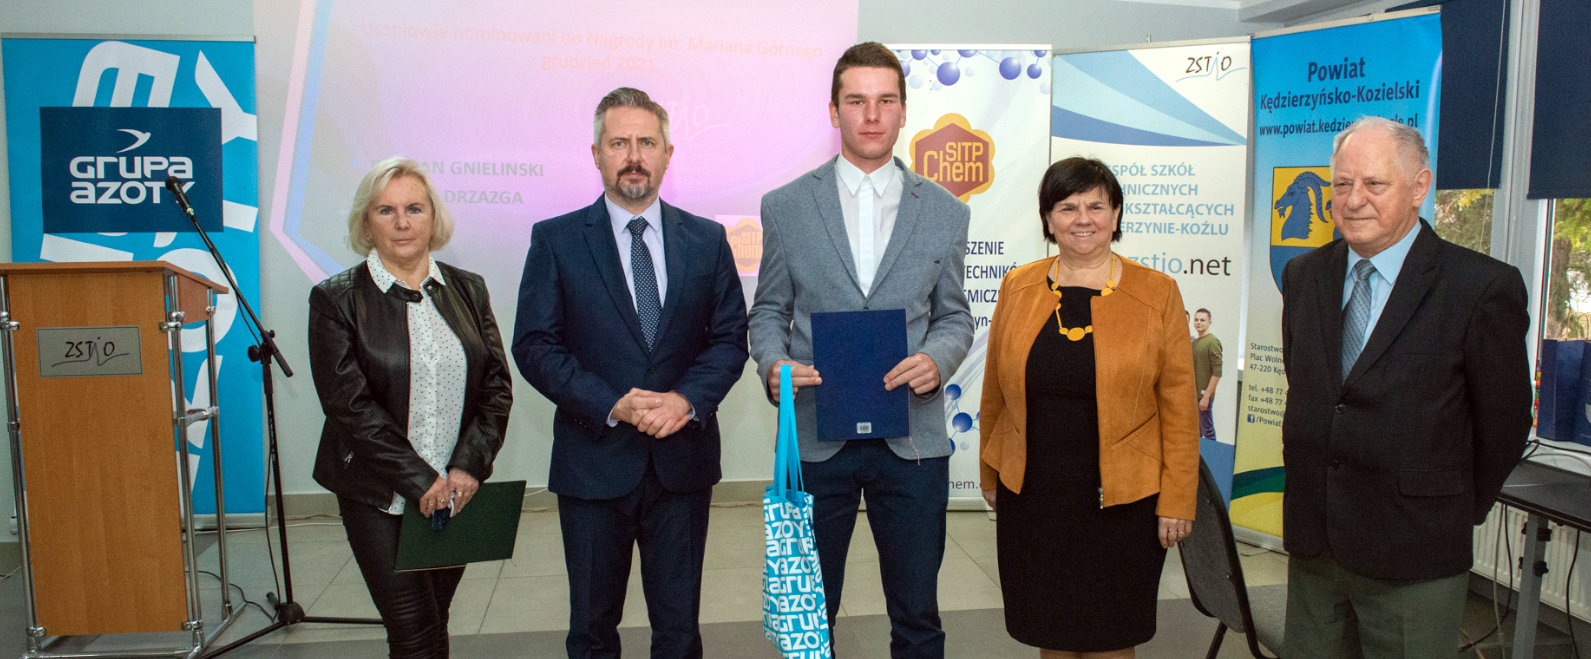 Grupa Azoty ZAK sfinansowała nagrodę dla najlepszego technika